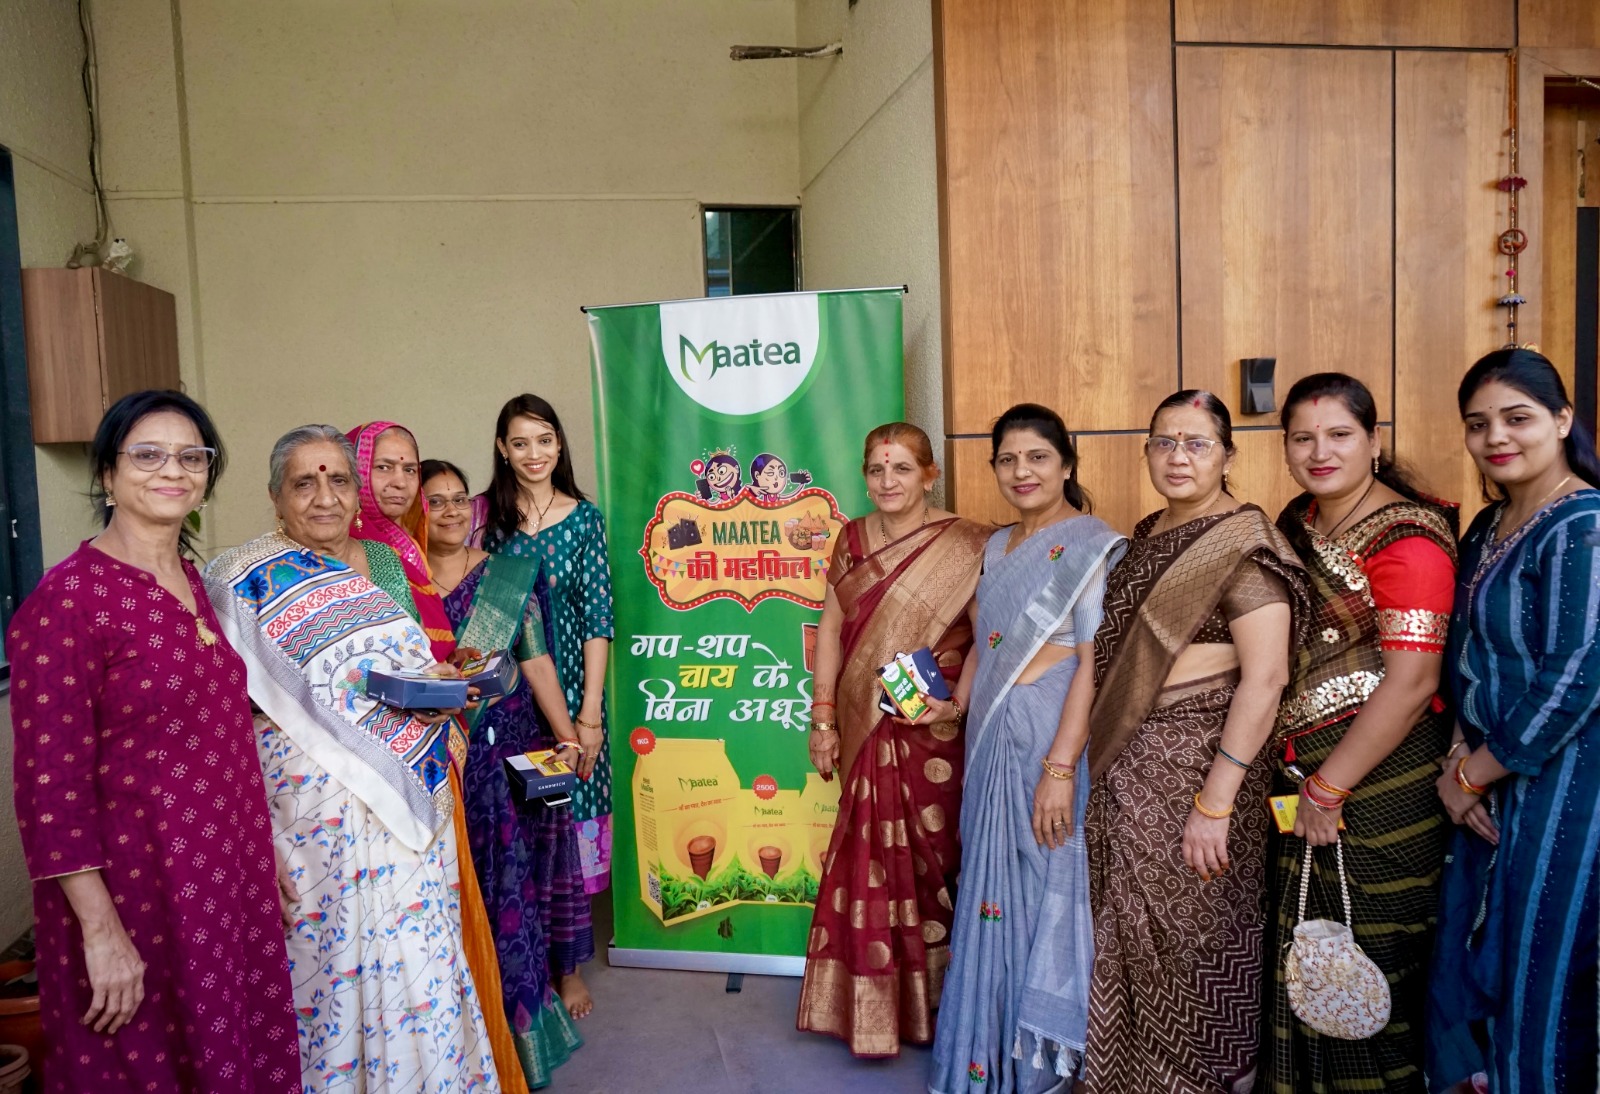 Chai Sutta Bar backed Maatea introduces 'Maatea ki Mehfil' Initiative